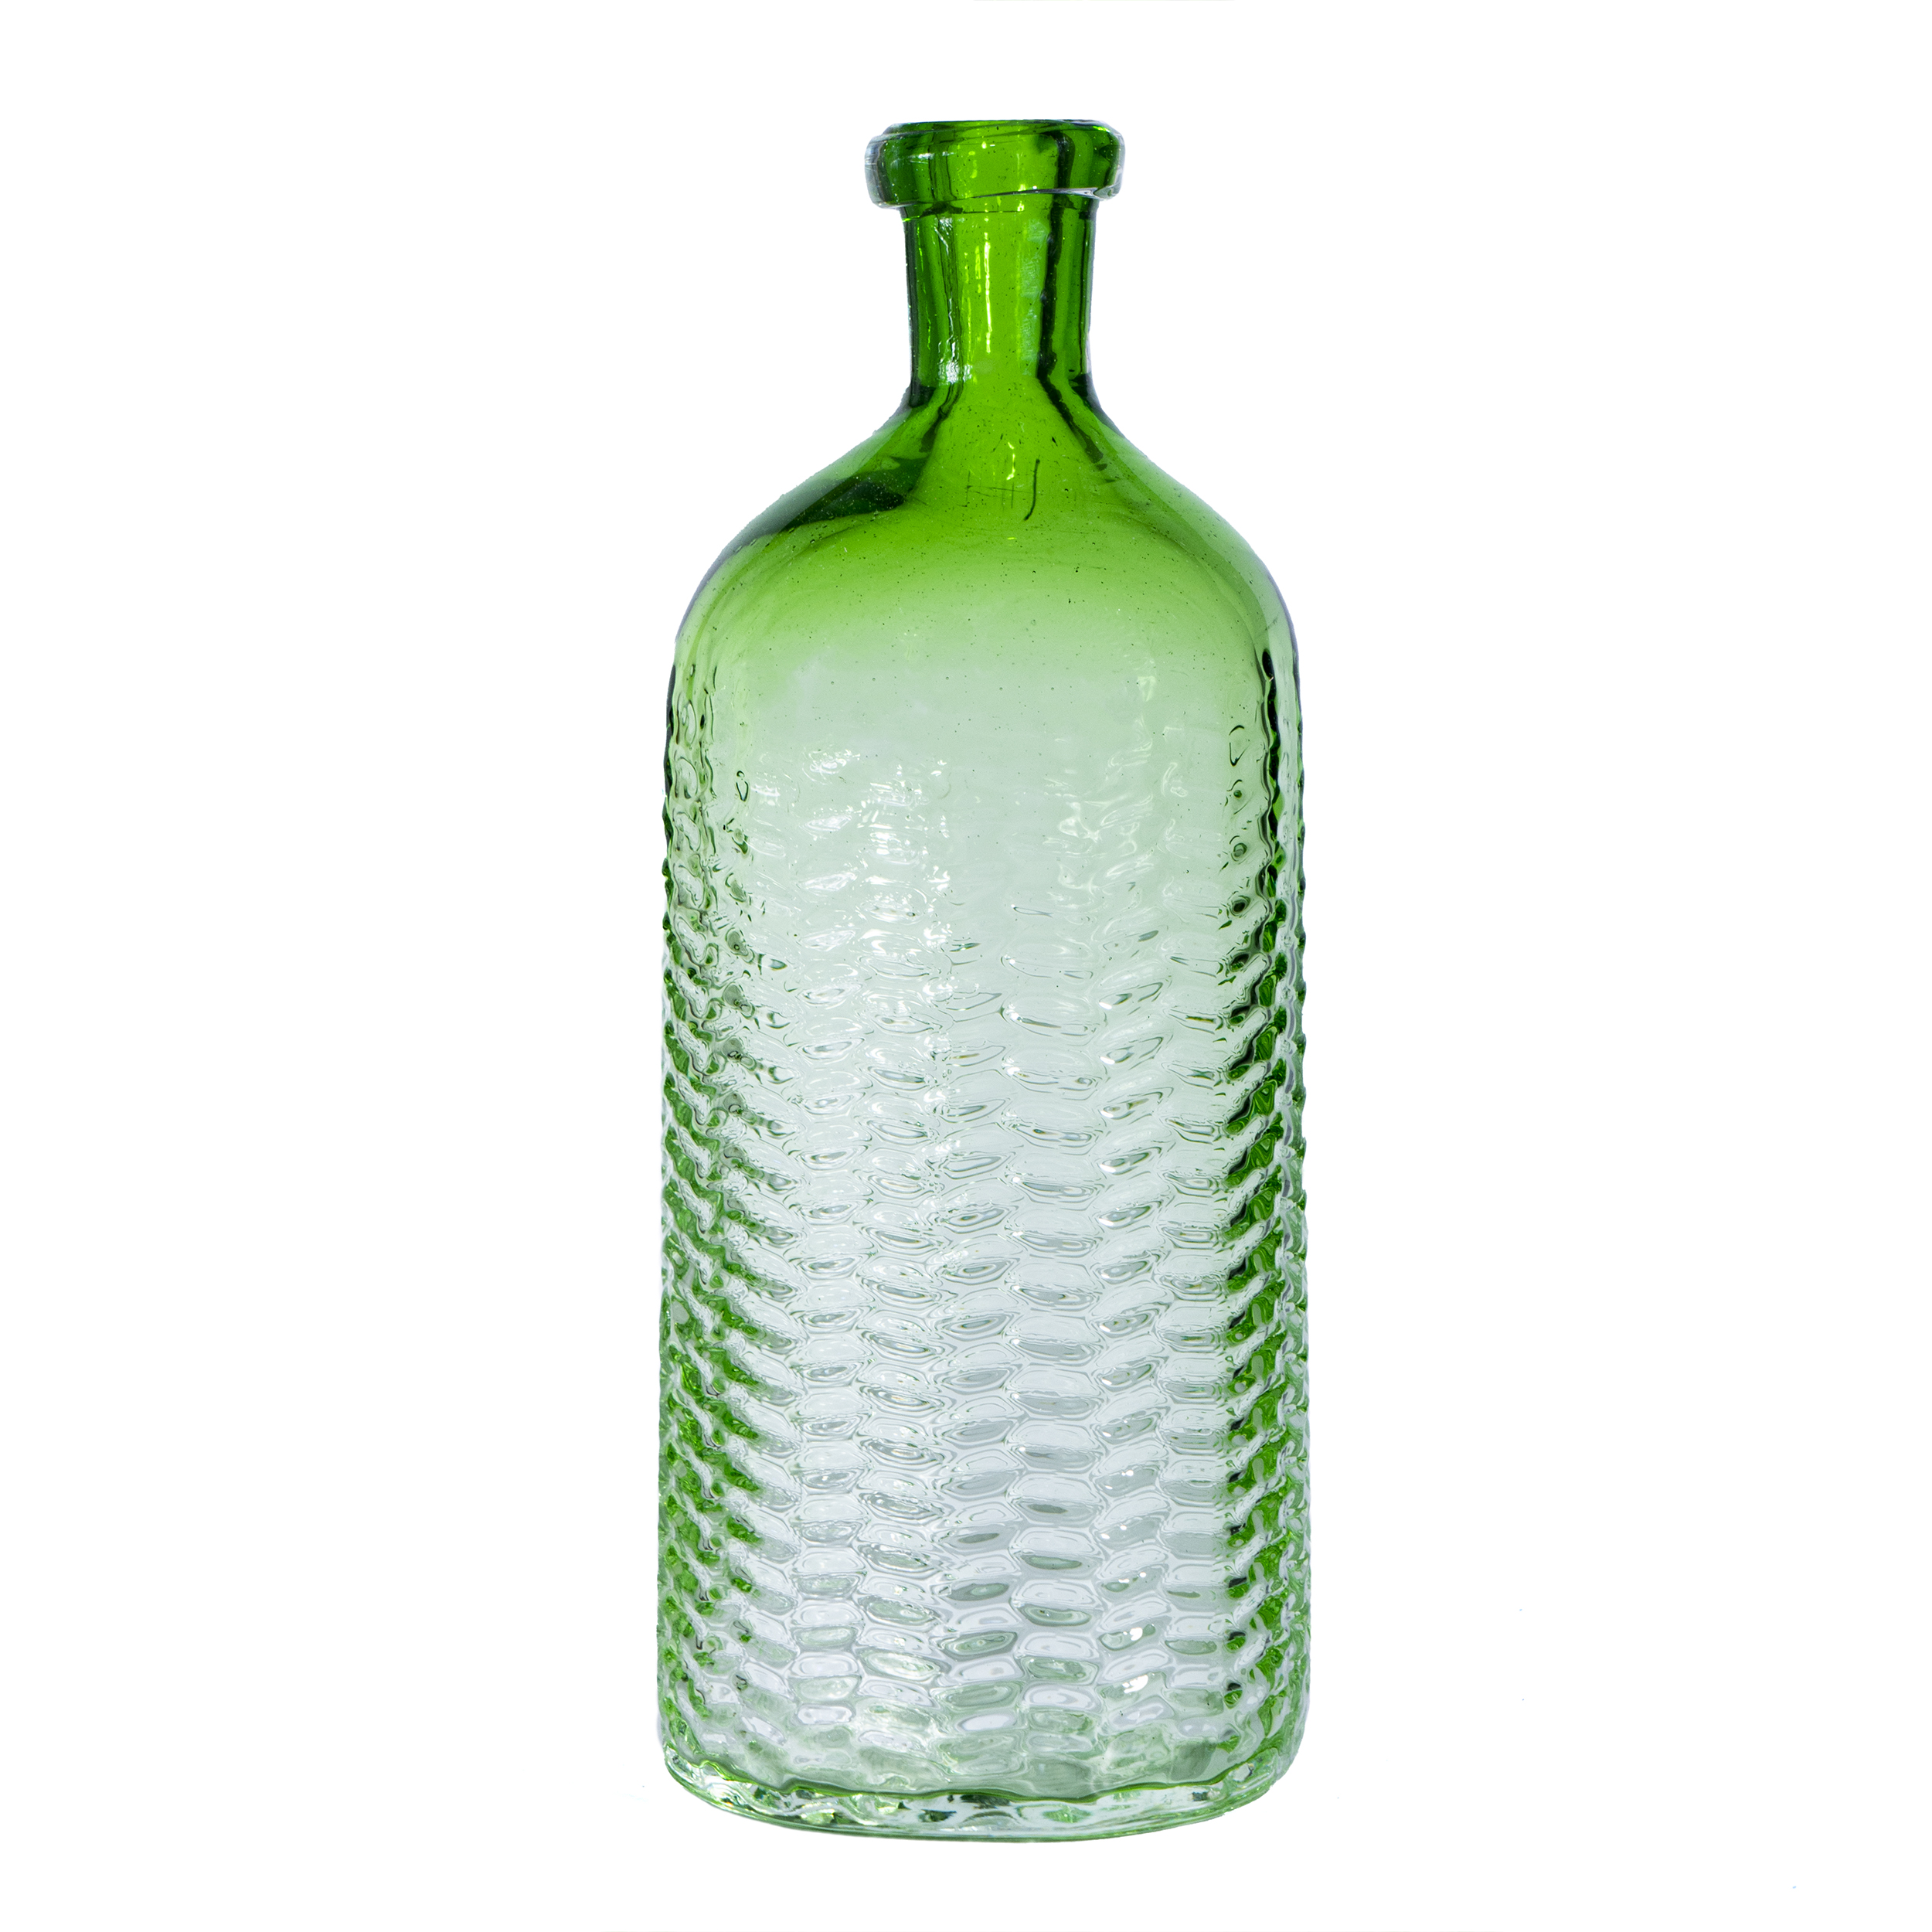 بطری شیشه ای مدل یخچالی کد 644